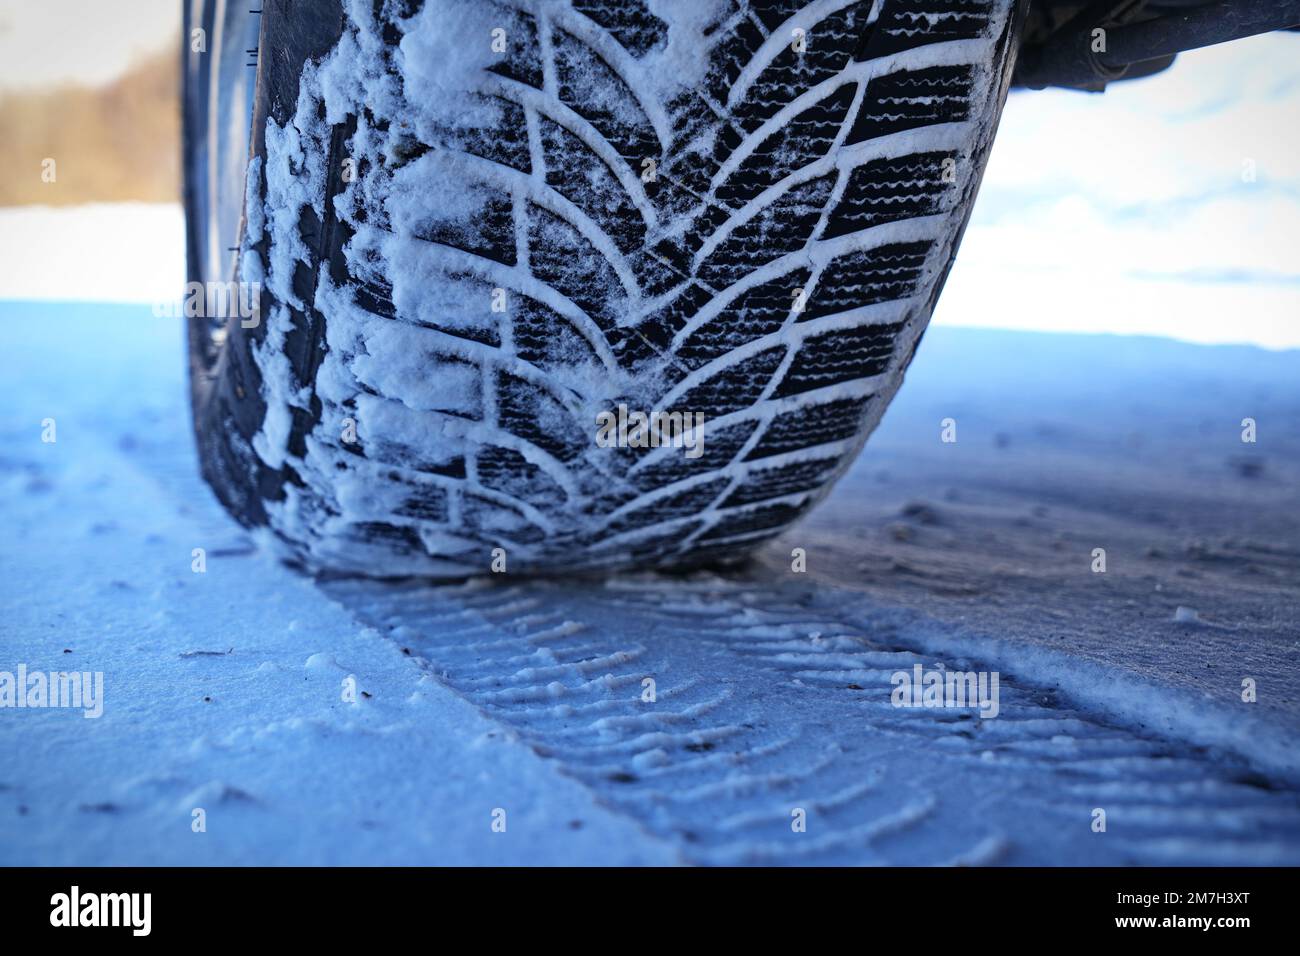 Conduite d'une voiture avec roue à pneus d'hiver sur route enneigée Banque D'Images